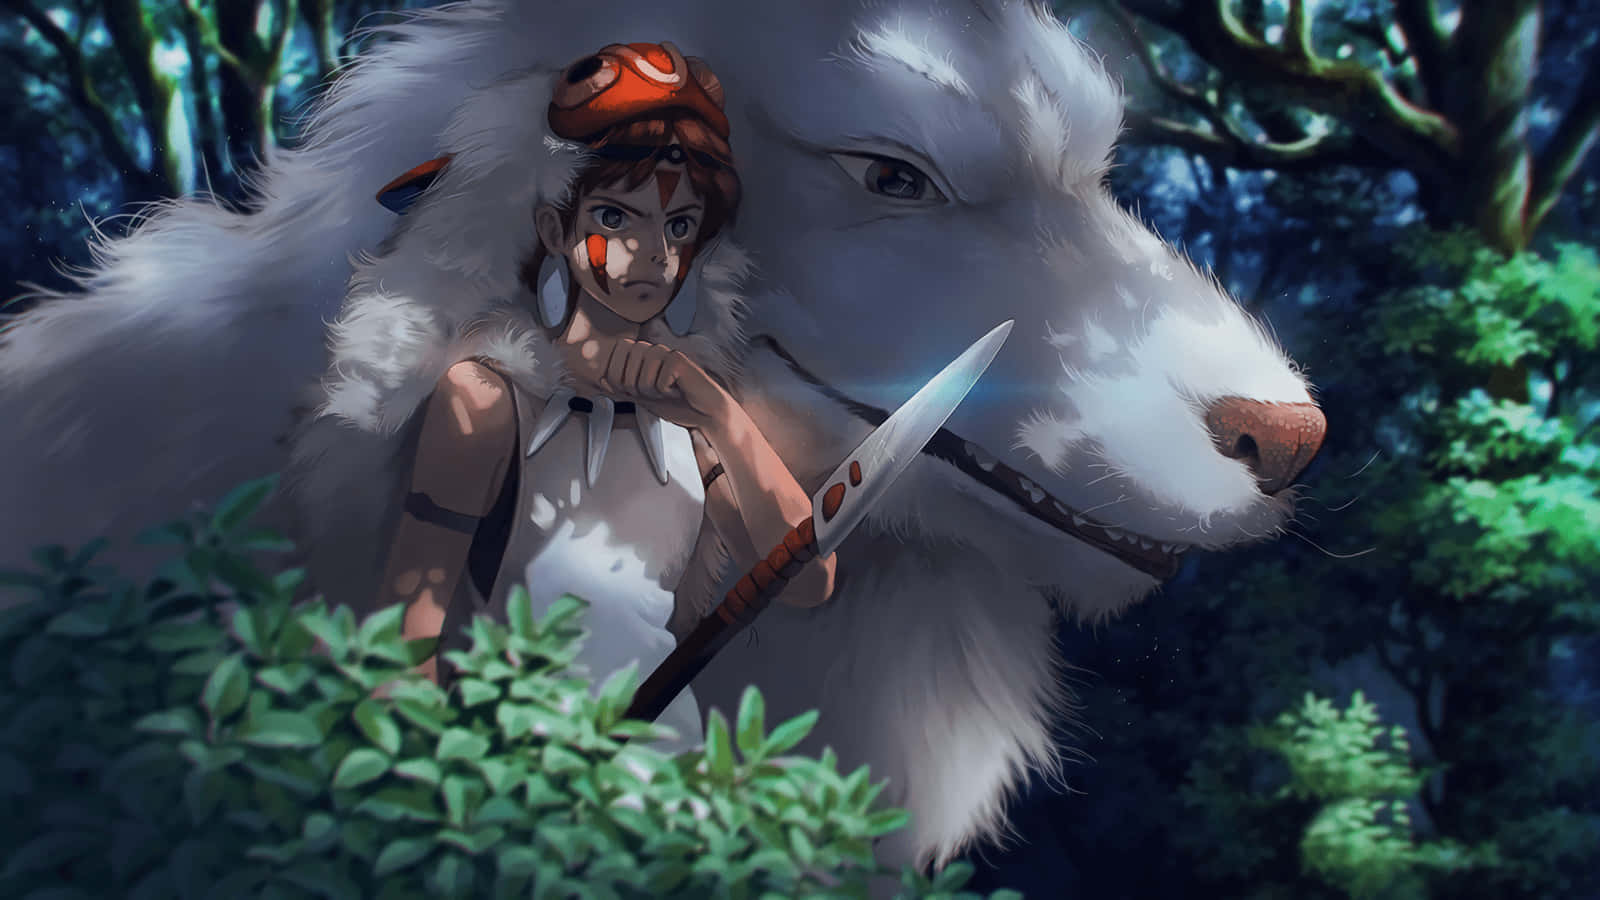 Ilcapolavoro Epico Di Fantasia, Principessa Mononoke Dello Studio Ghibli. Sfondo